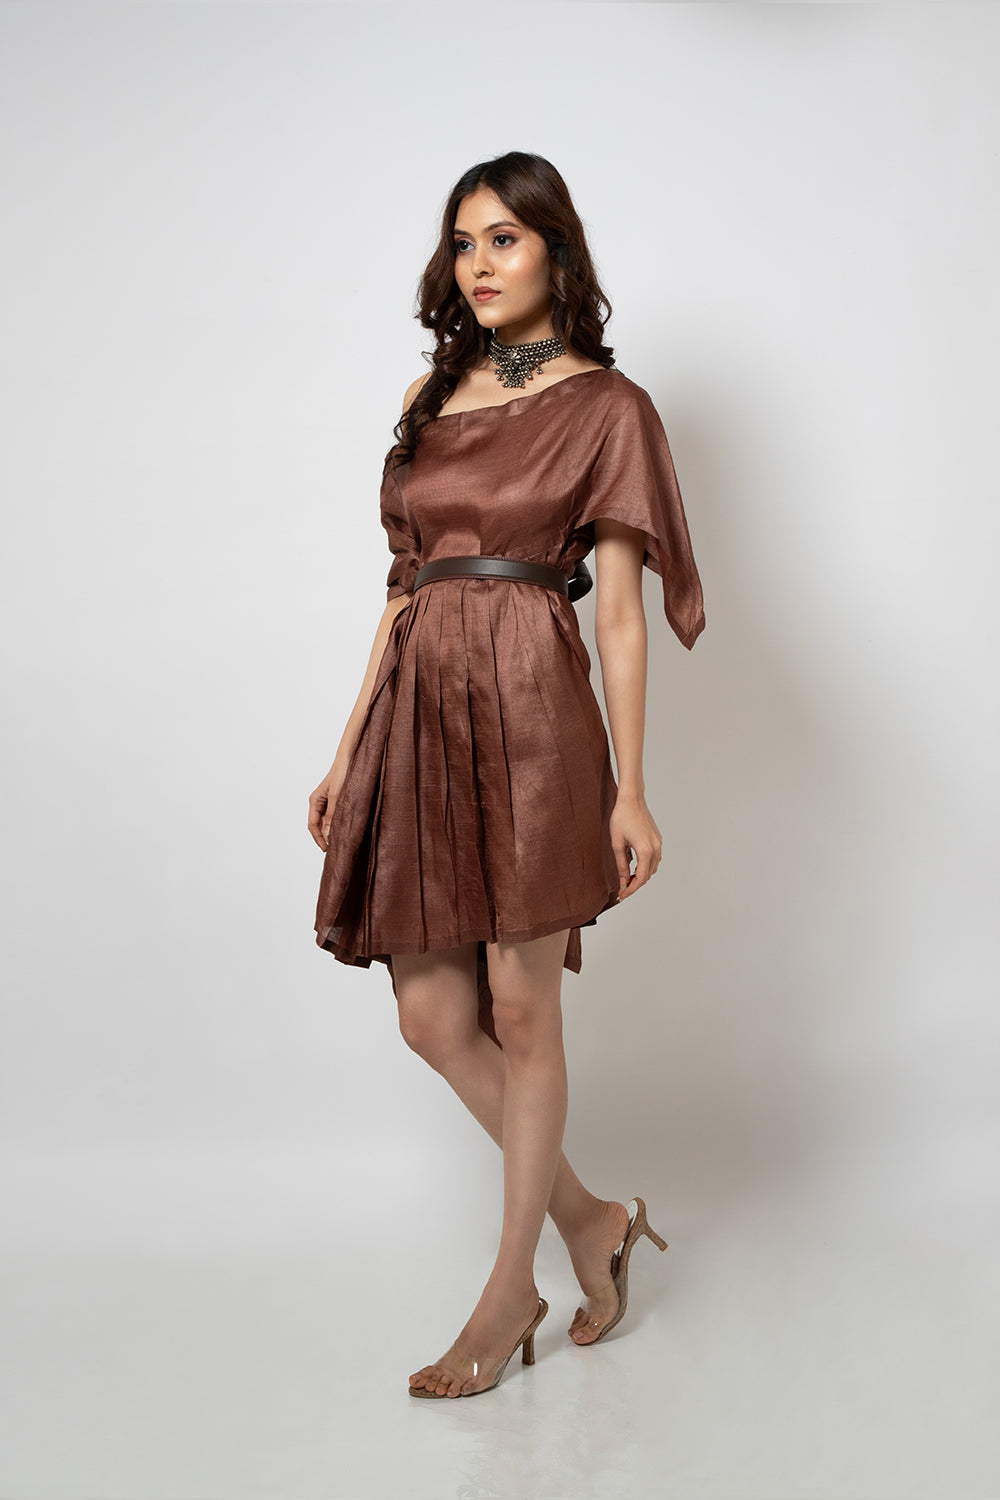 94. A Brown silk blend zero waste dress